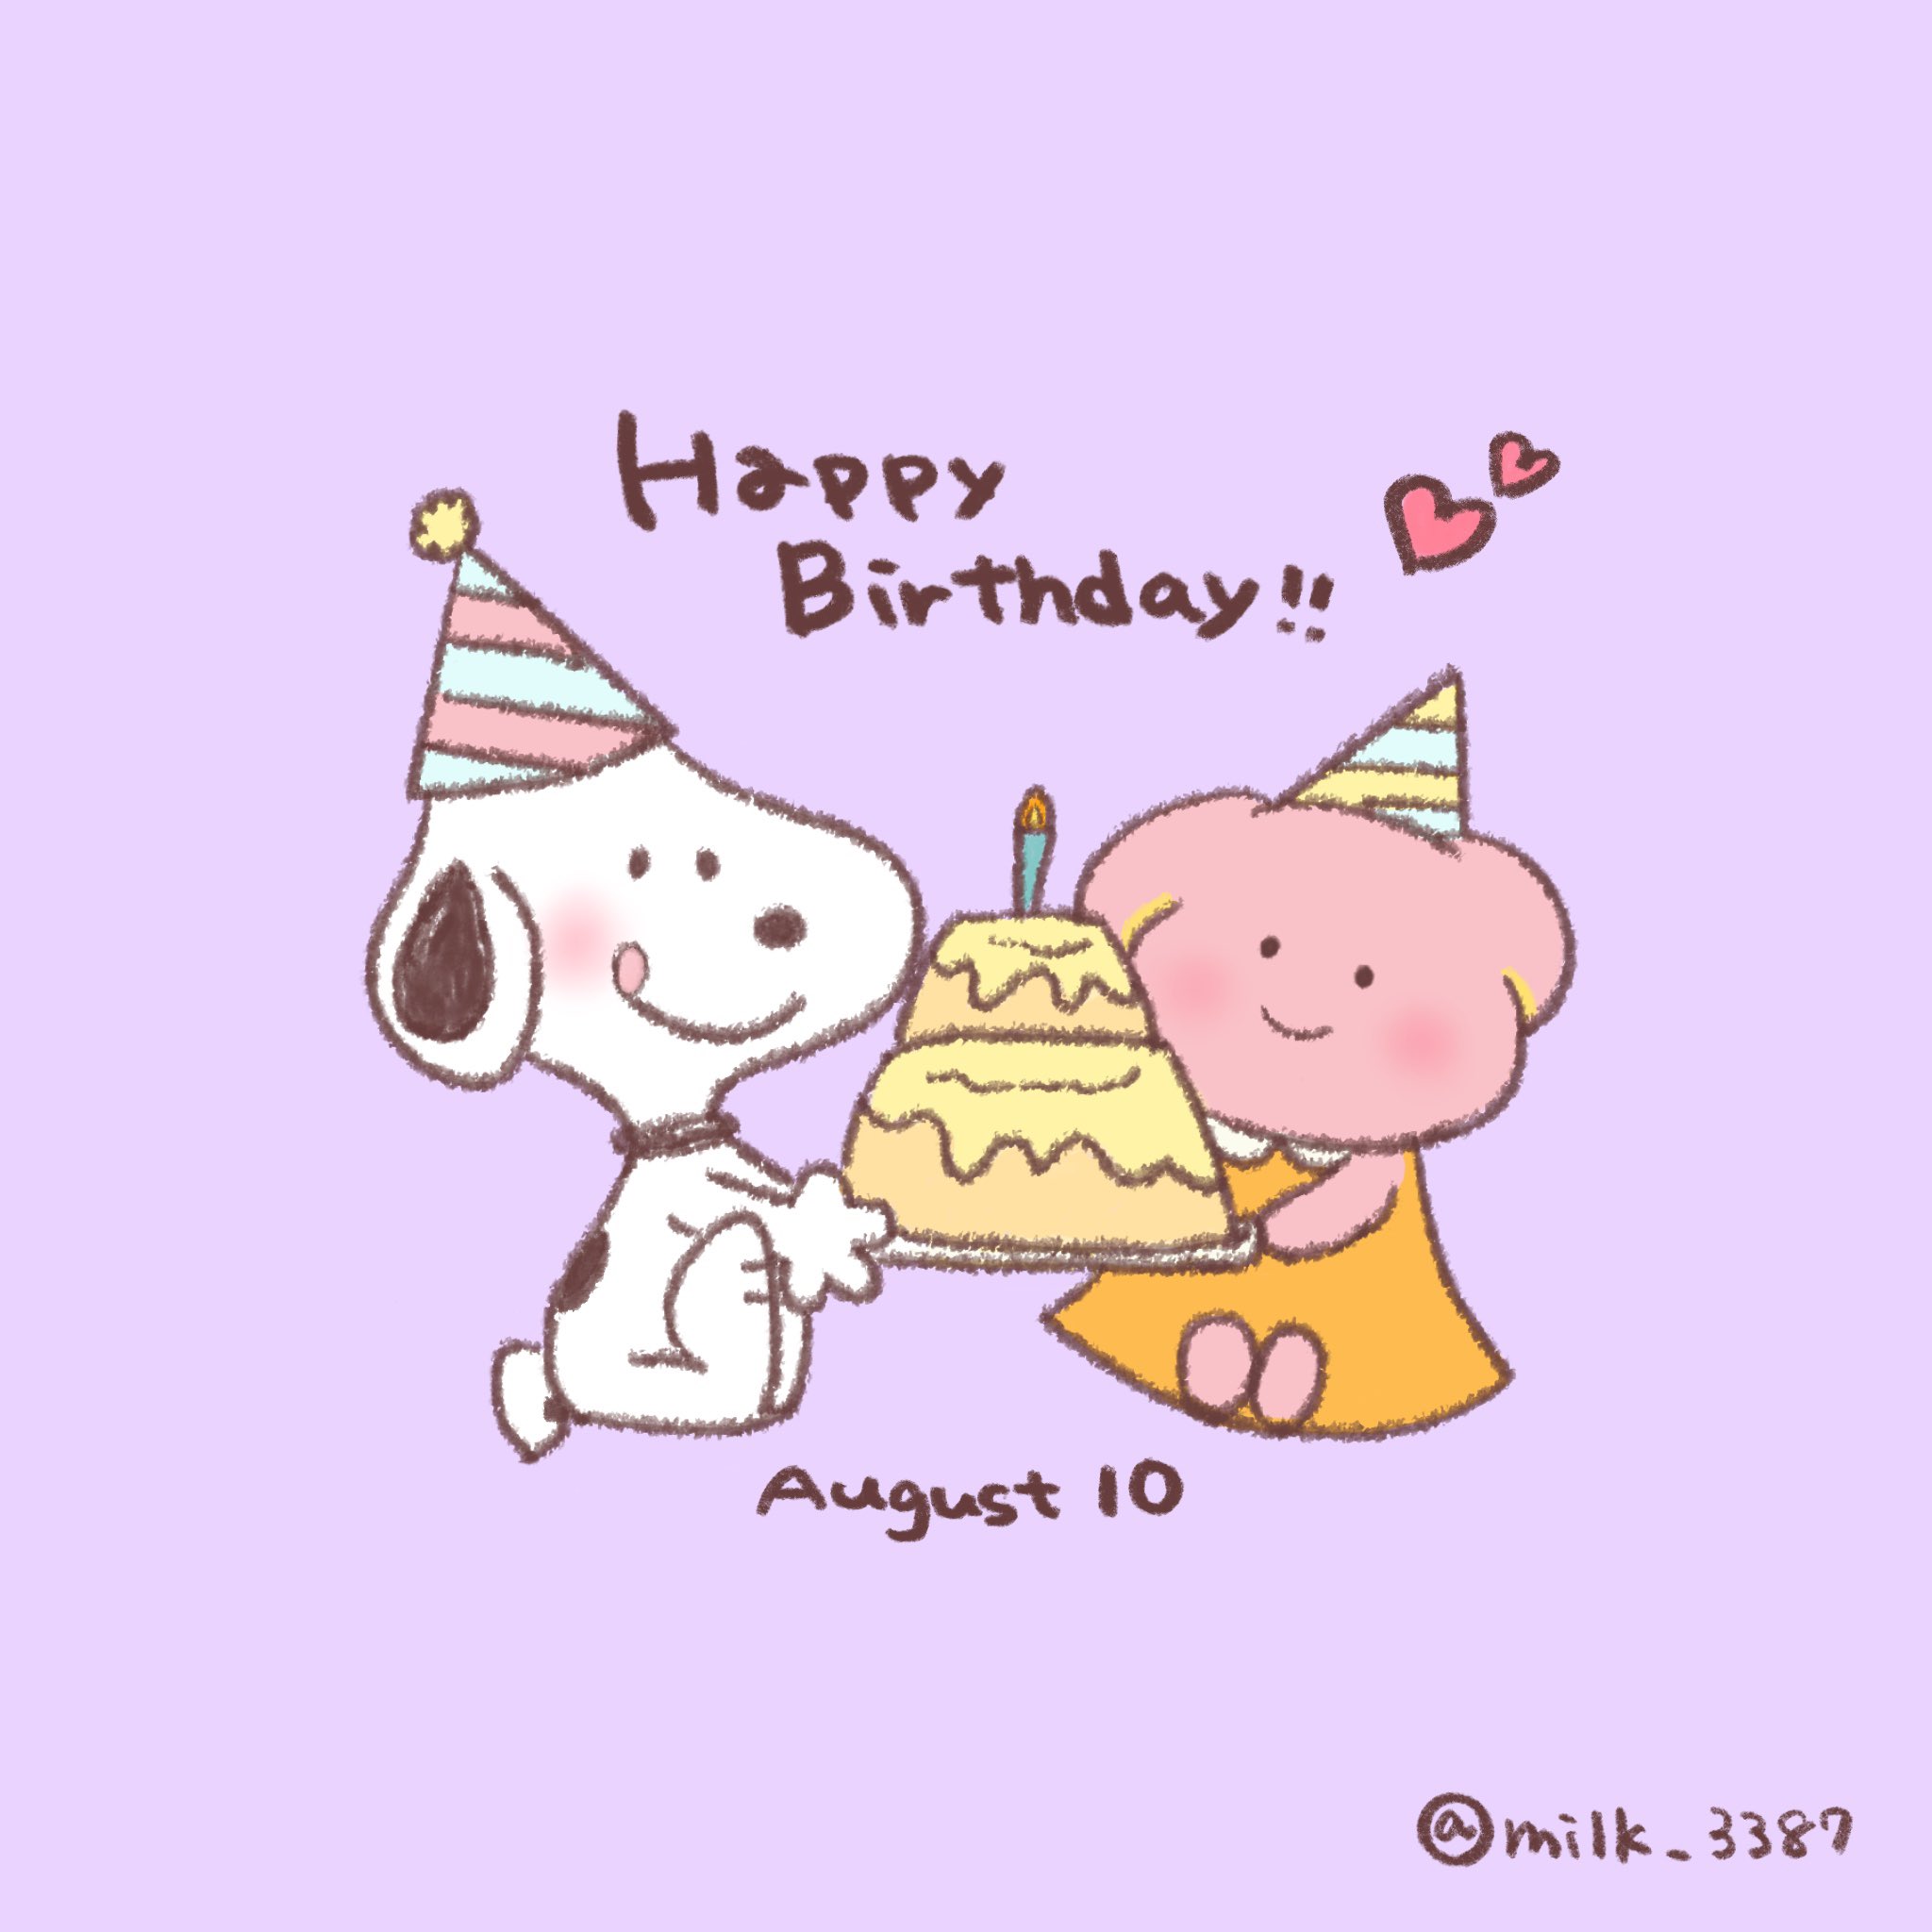 みるく Happy Birthday Snoopy イラスト お絵かき お絵描き スヌーピー ピーナッツ Hbdスヌーピー 誕生日 誕生日おめでとう ケーキ スヌーピー誕生日 スヌーピー誕生日おめでとう Snoopy Peanuts Hbdsnoopy T Co